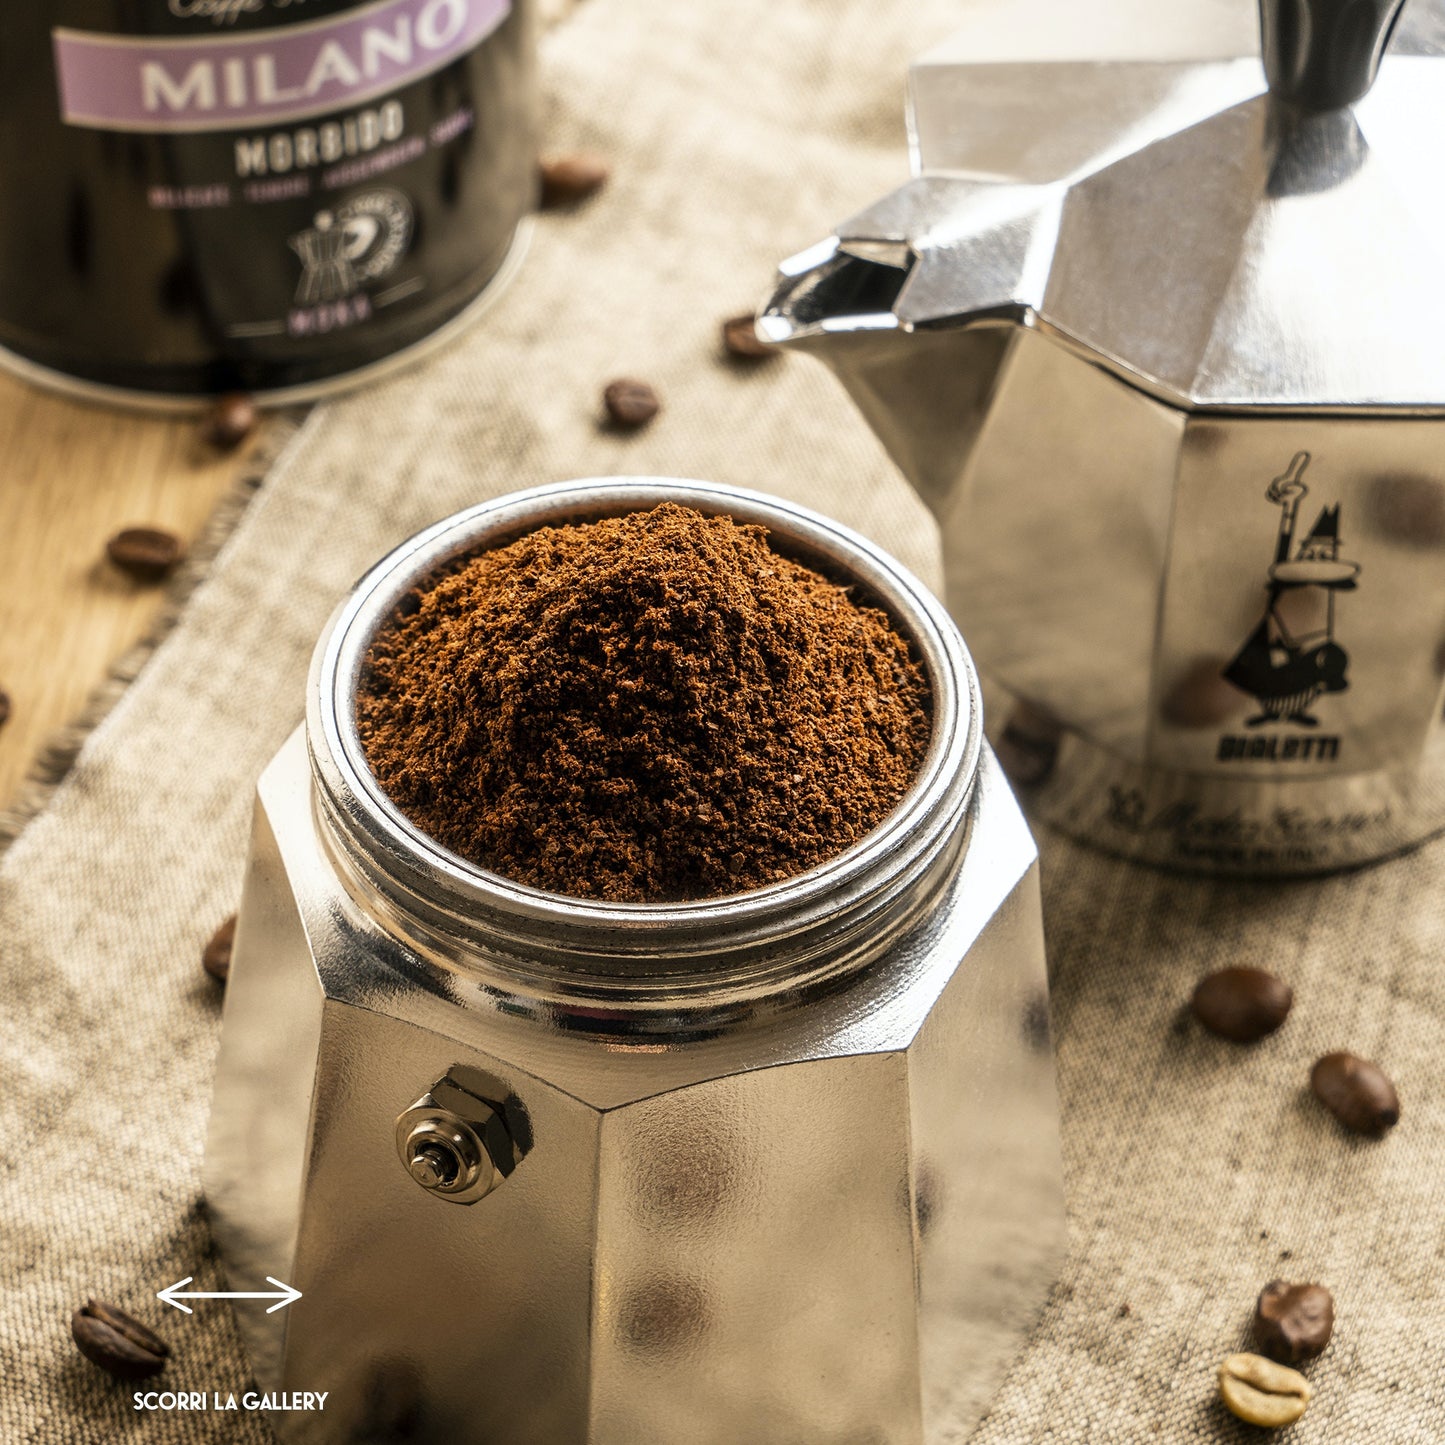 Caffettiera in alluminio da 6 tazze.  Con la moka Bialetti, il piacere del caffè diventa un rito quotidiano, dove il design contemporaneo e moderno incontra la migliore tradizione, per farti assaporare ogni giorno tutto il gusto e l'aroma del caffè con la moka. In negozio e online su tuttochic.it